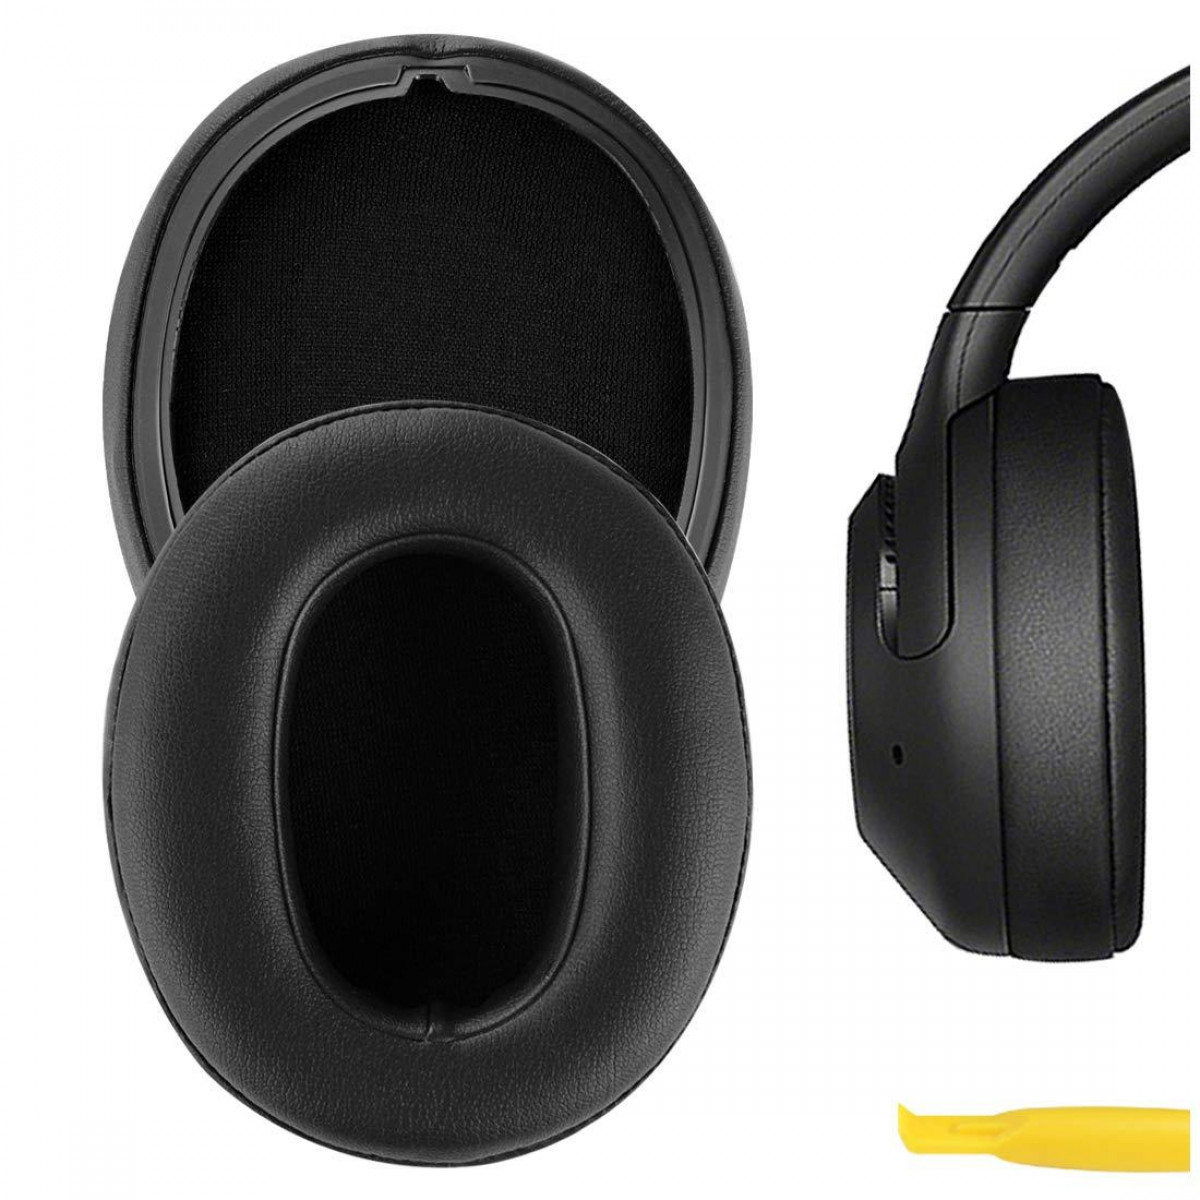 INF Ohrpolster für Kopfhörer schwarz Schwarz Ersatzpolster Ohrpolster WH-XB900N Sony 1 Paar